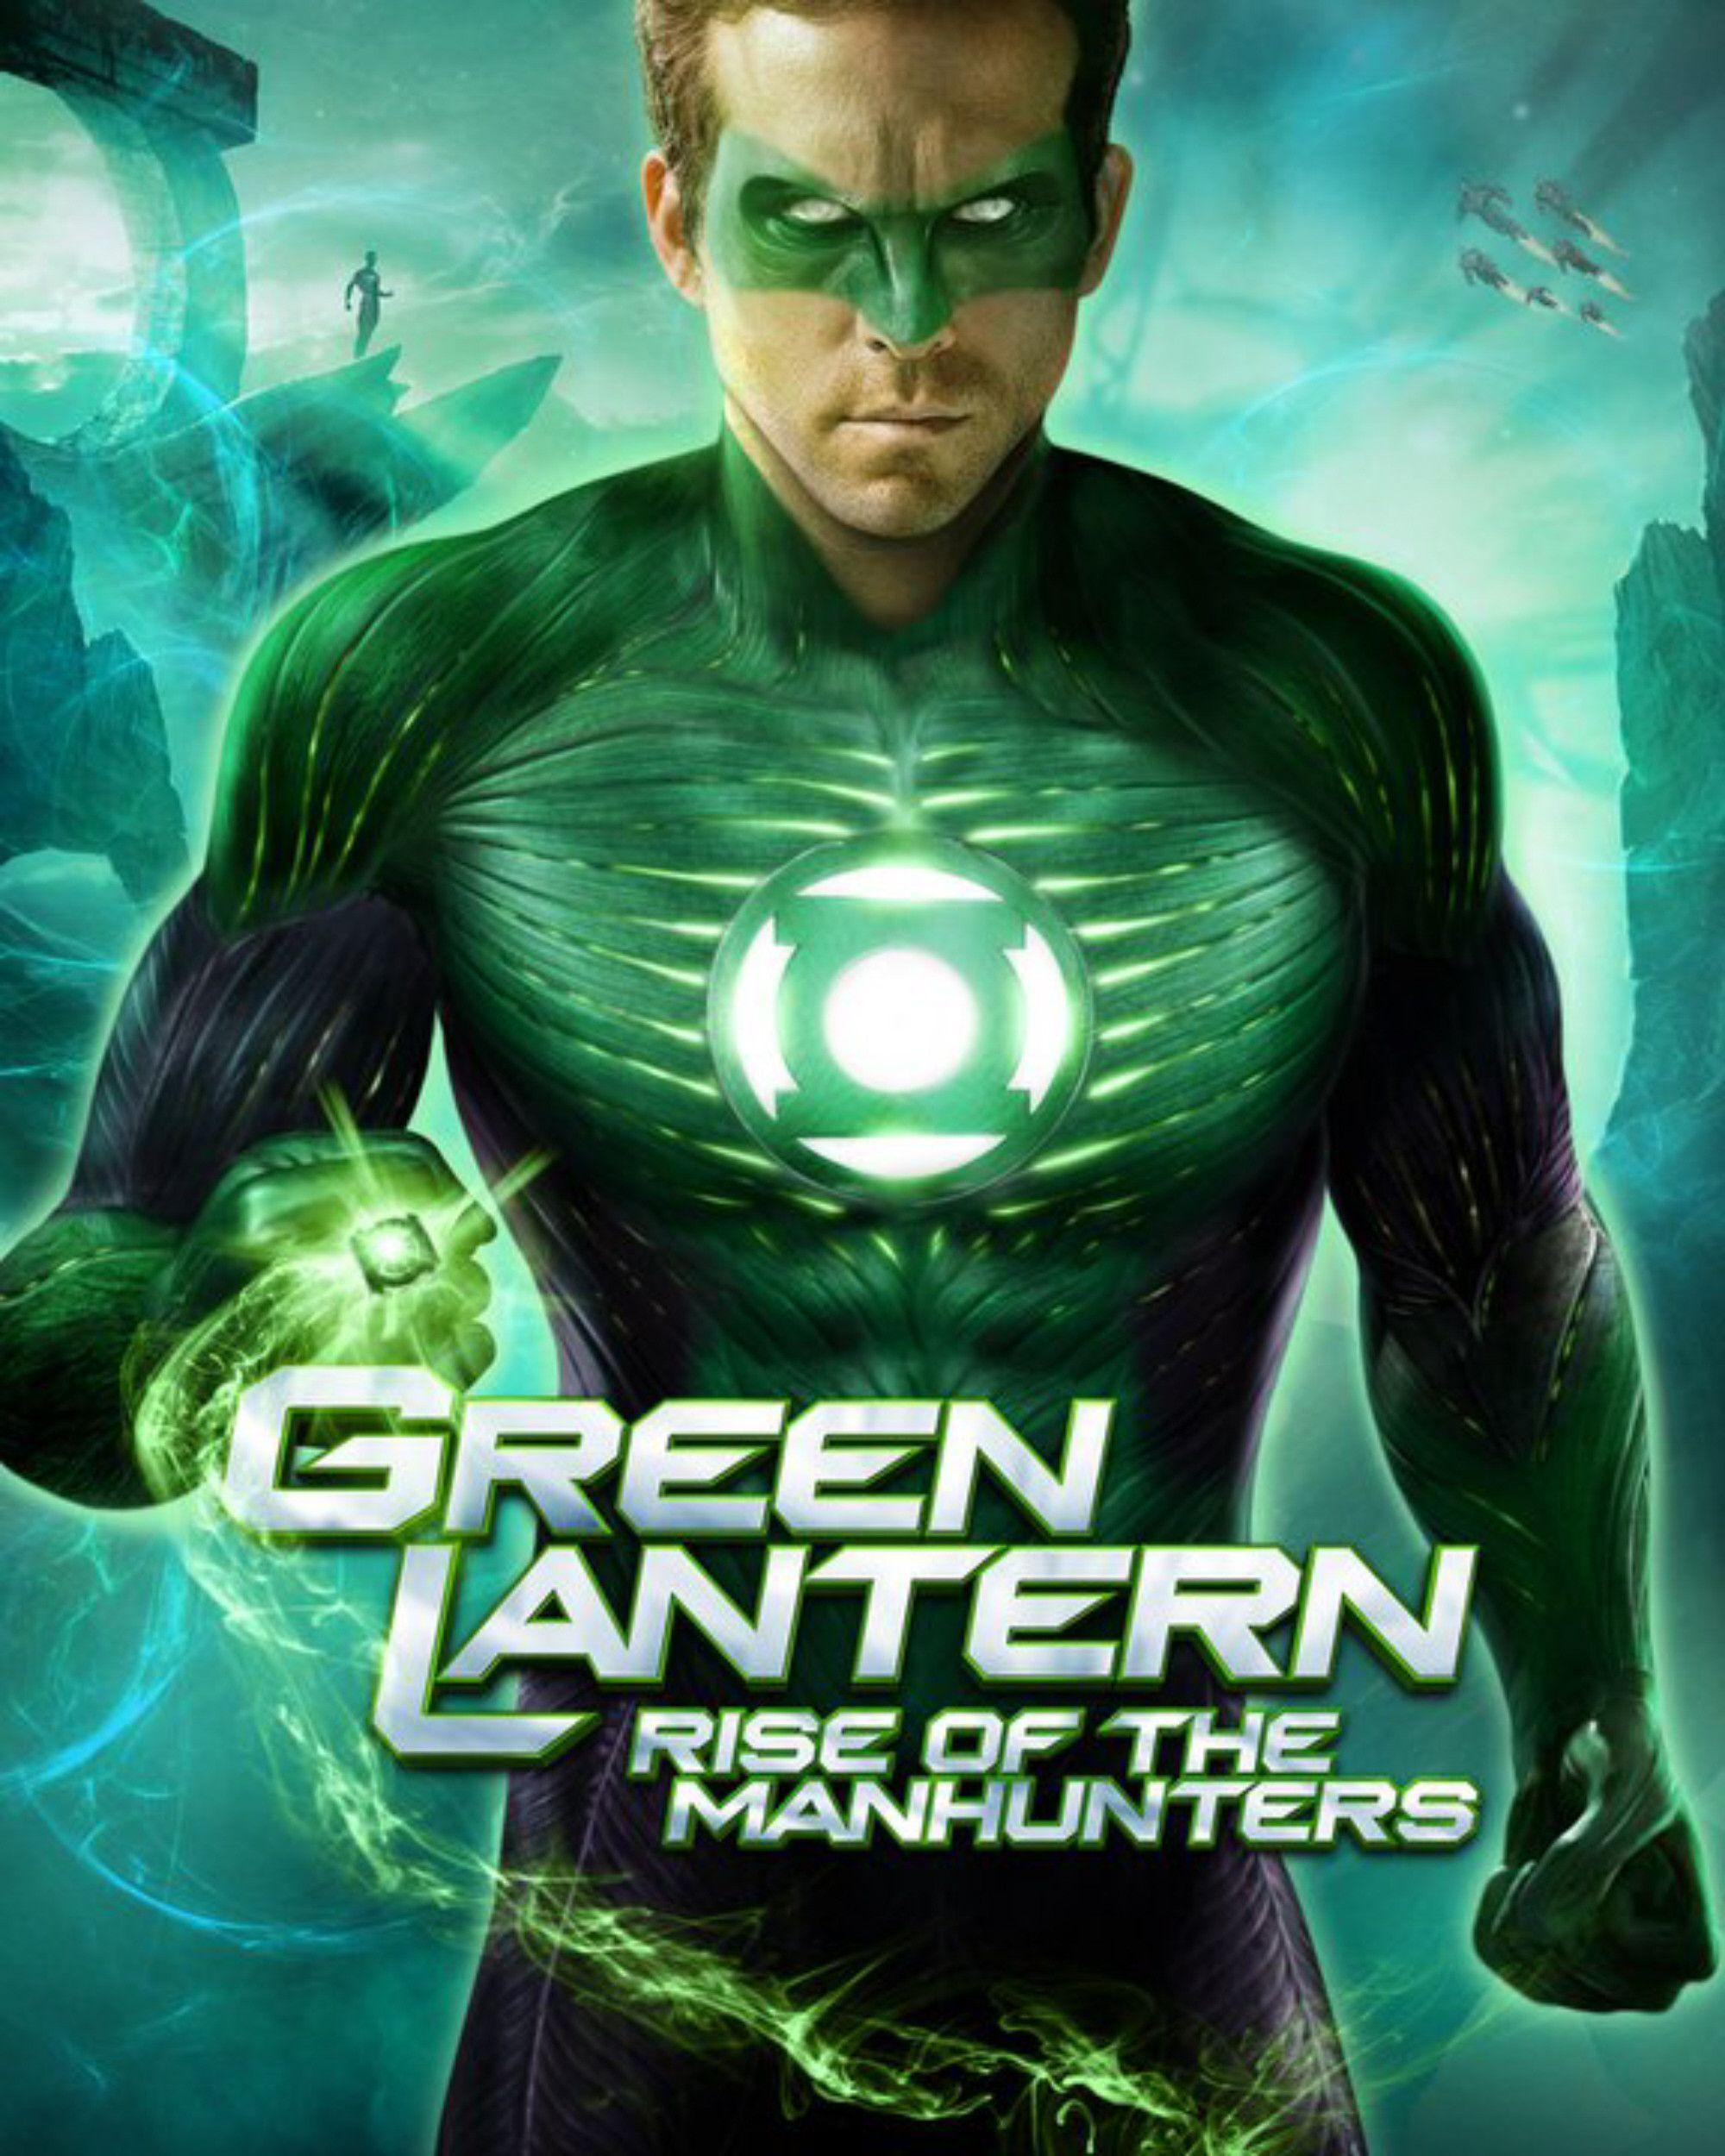 green lantern wallpaper Search Engine